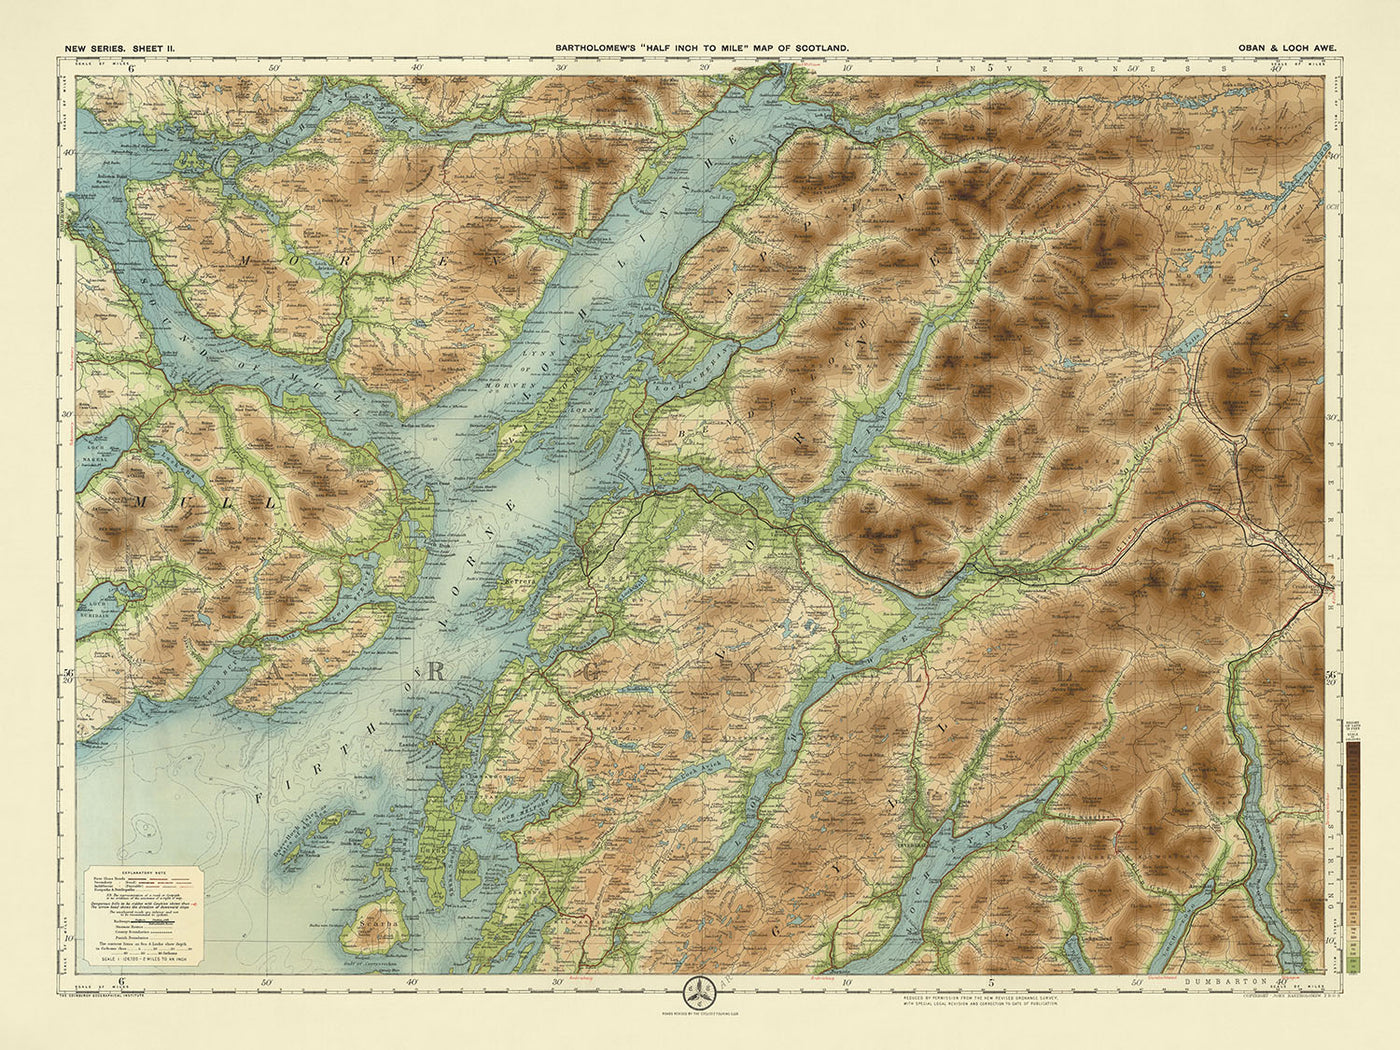 Antiguo mapa del sistema operativo de Oban y Loch Awe, Argyllshire por Bartholomew, 1901: Oban, Loch Awe, Ben Cruachan, Glen Coe, Isla de Mull, Loch Lomond